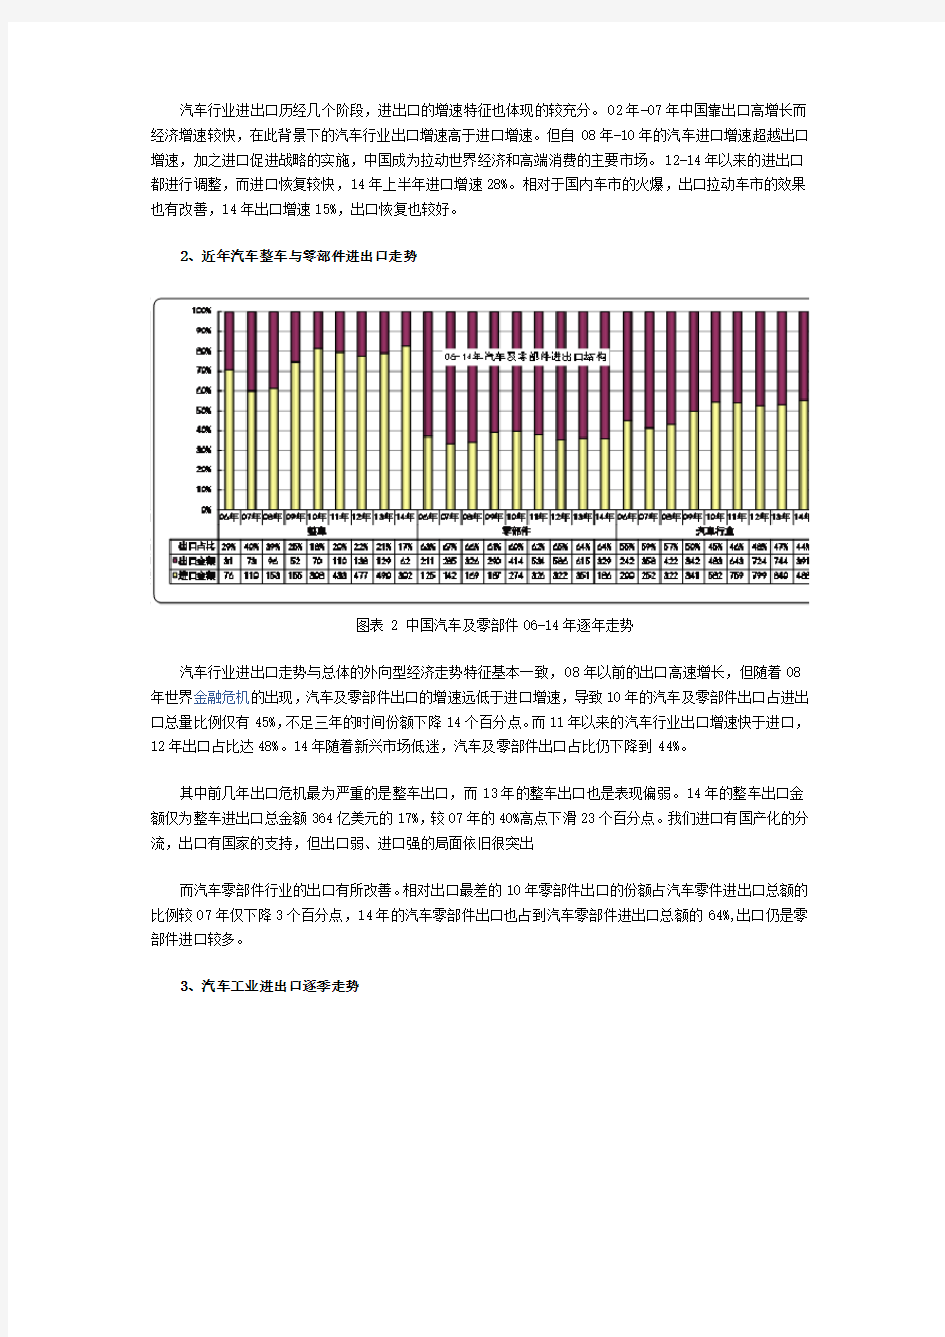 2010至2014年中国汽车进出口情况详细分析